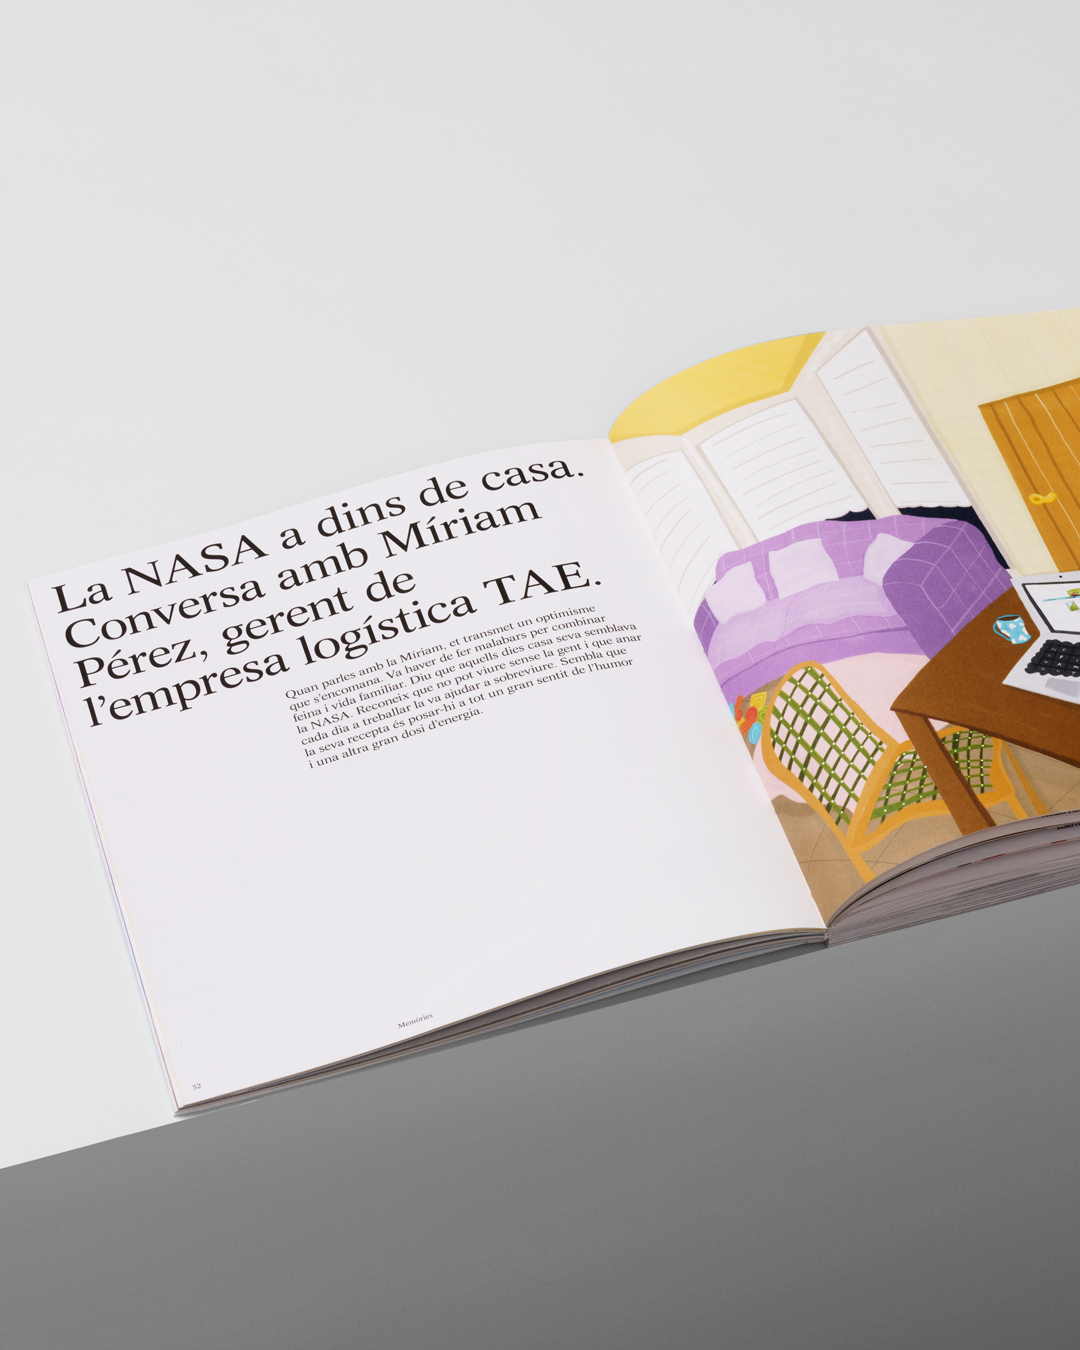 Atipus | Estudio diseño gráfico - Barcelona